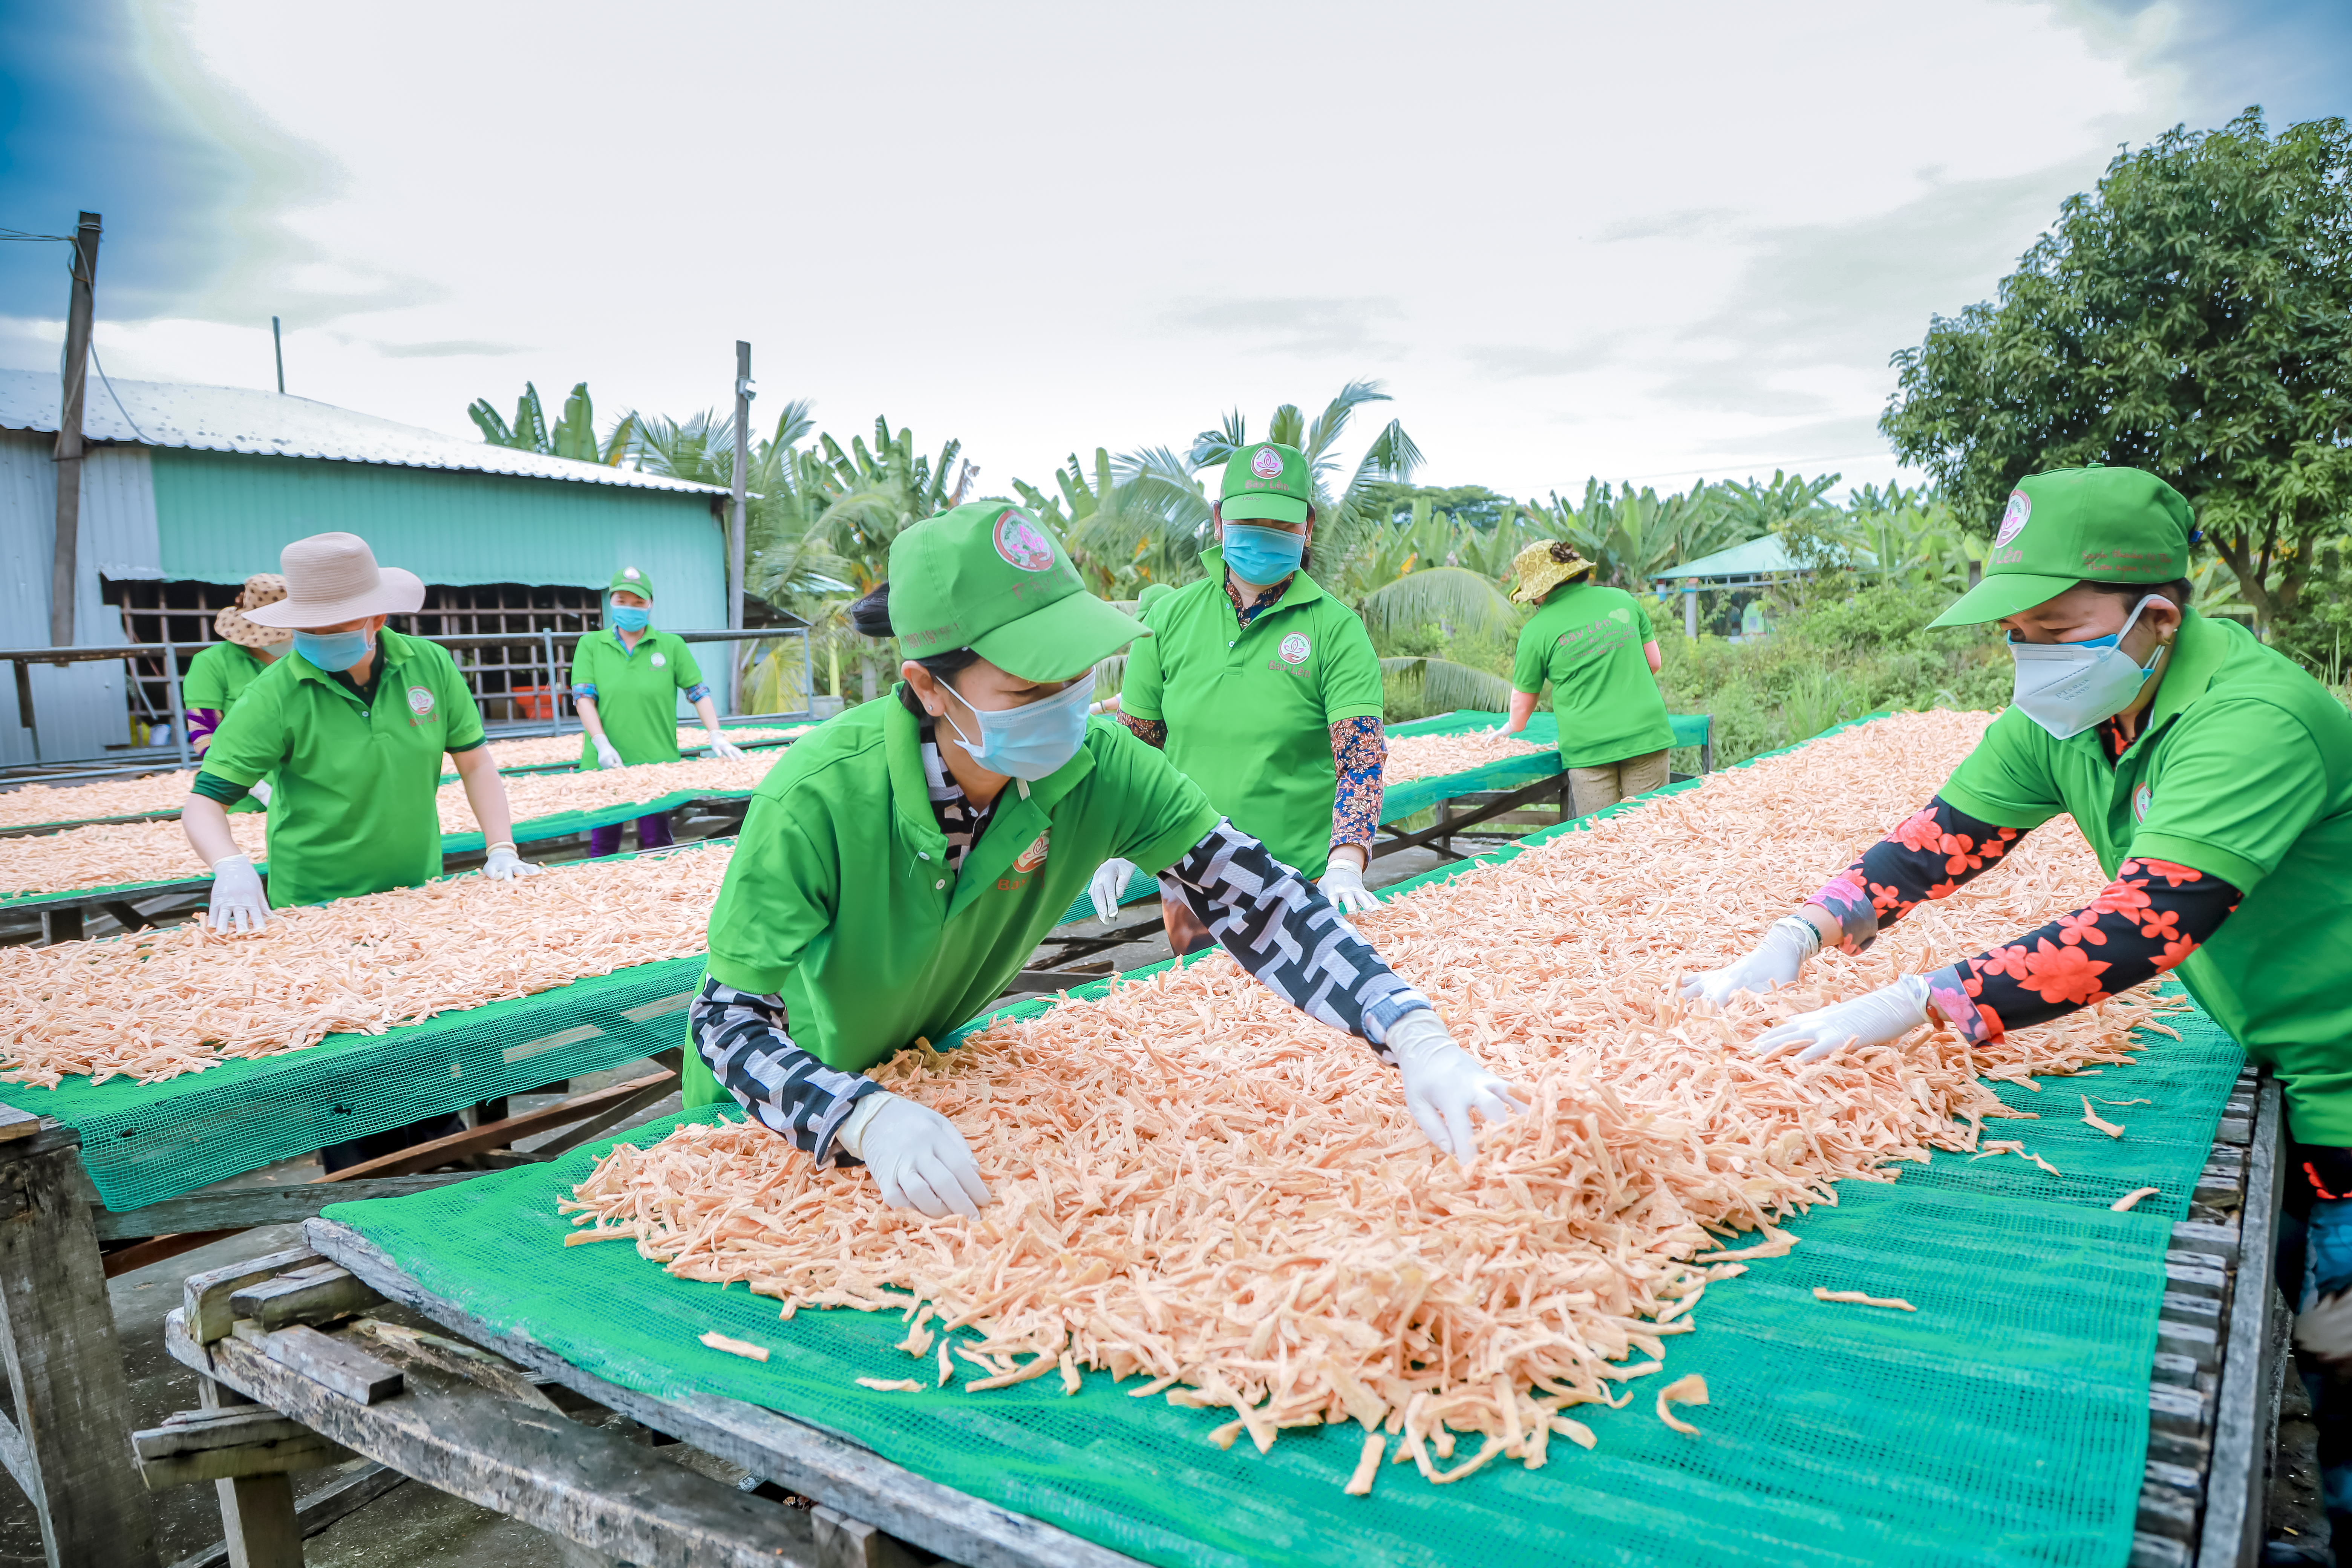 sở sản xuất thực phẩm chay Bảy Lên ở tỉnh Đồng Tháp vay vốn chính sách phát triển SXKD, tạo việc làm ổn định, bền vững cho lao động nữ